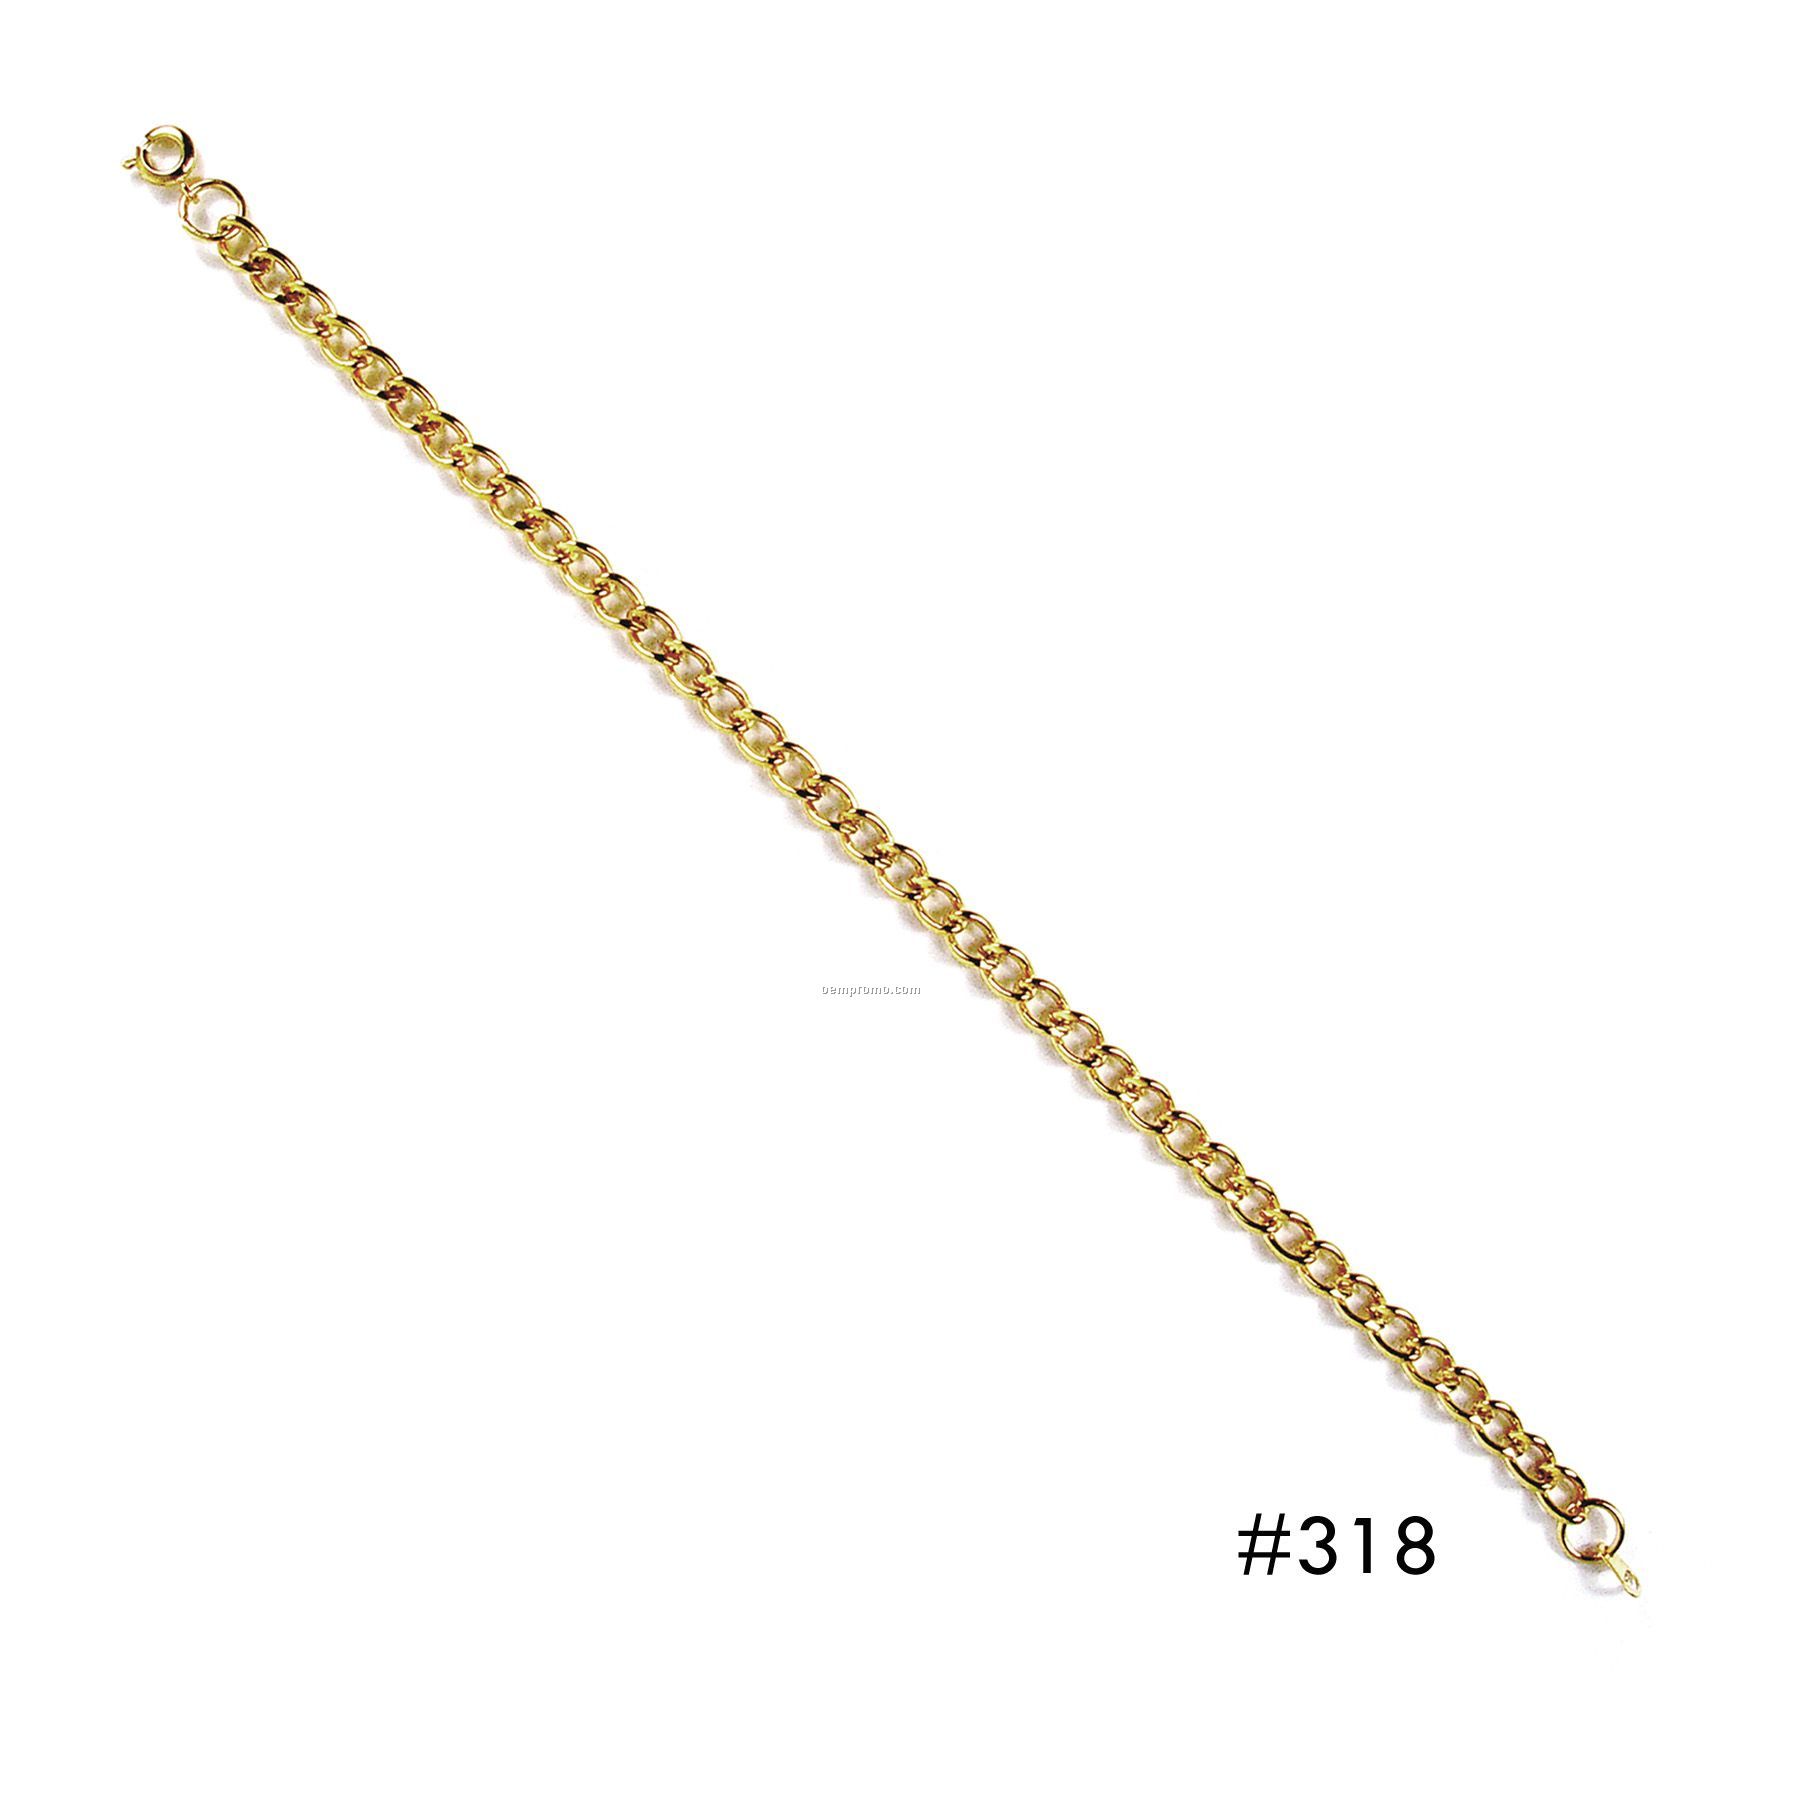 Gold Charm Bracelet - Large Link